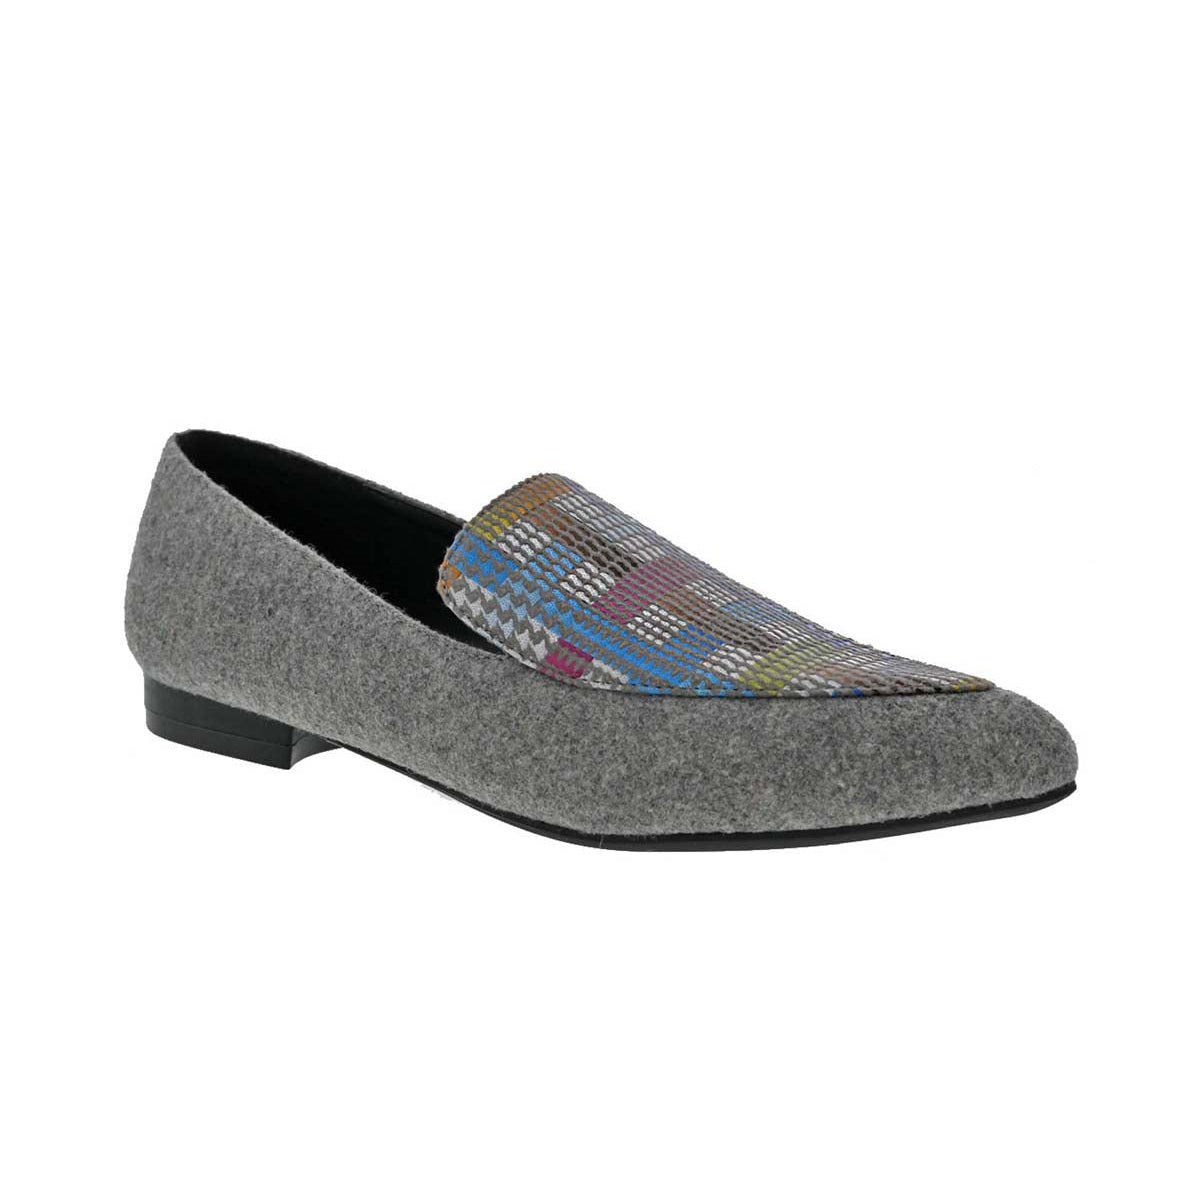 BELLINI FERRIS WOMEN FLAT SLIP-ON SHOE'S IN GREY MULTI WOOL - TLW Shoes